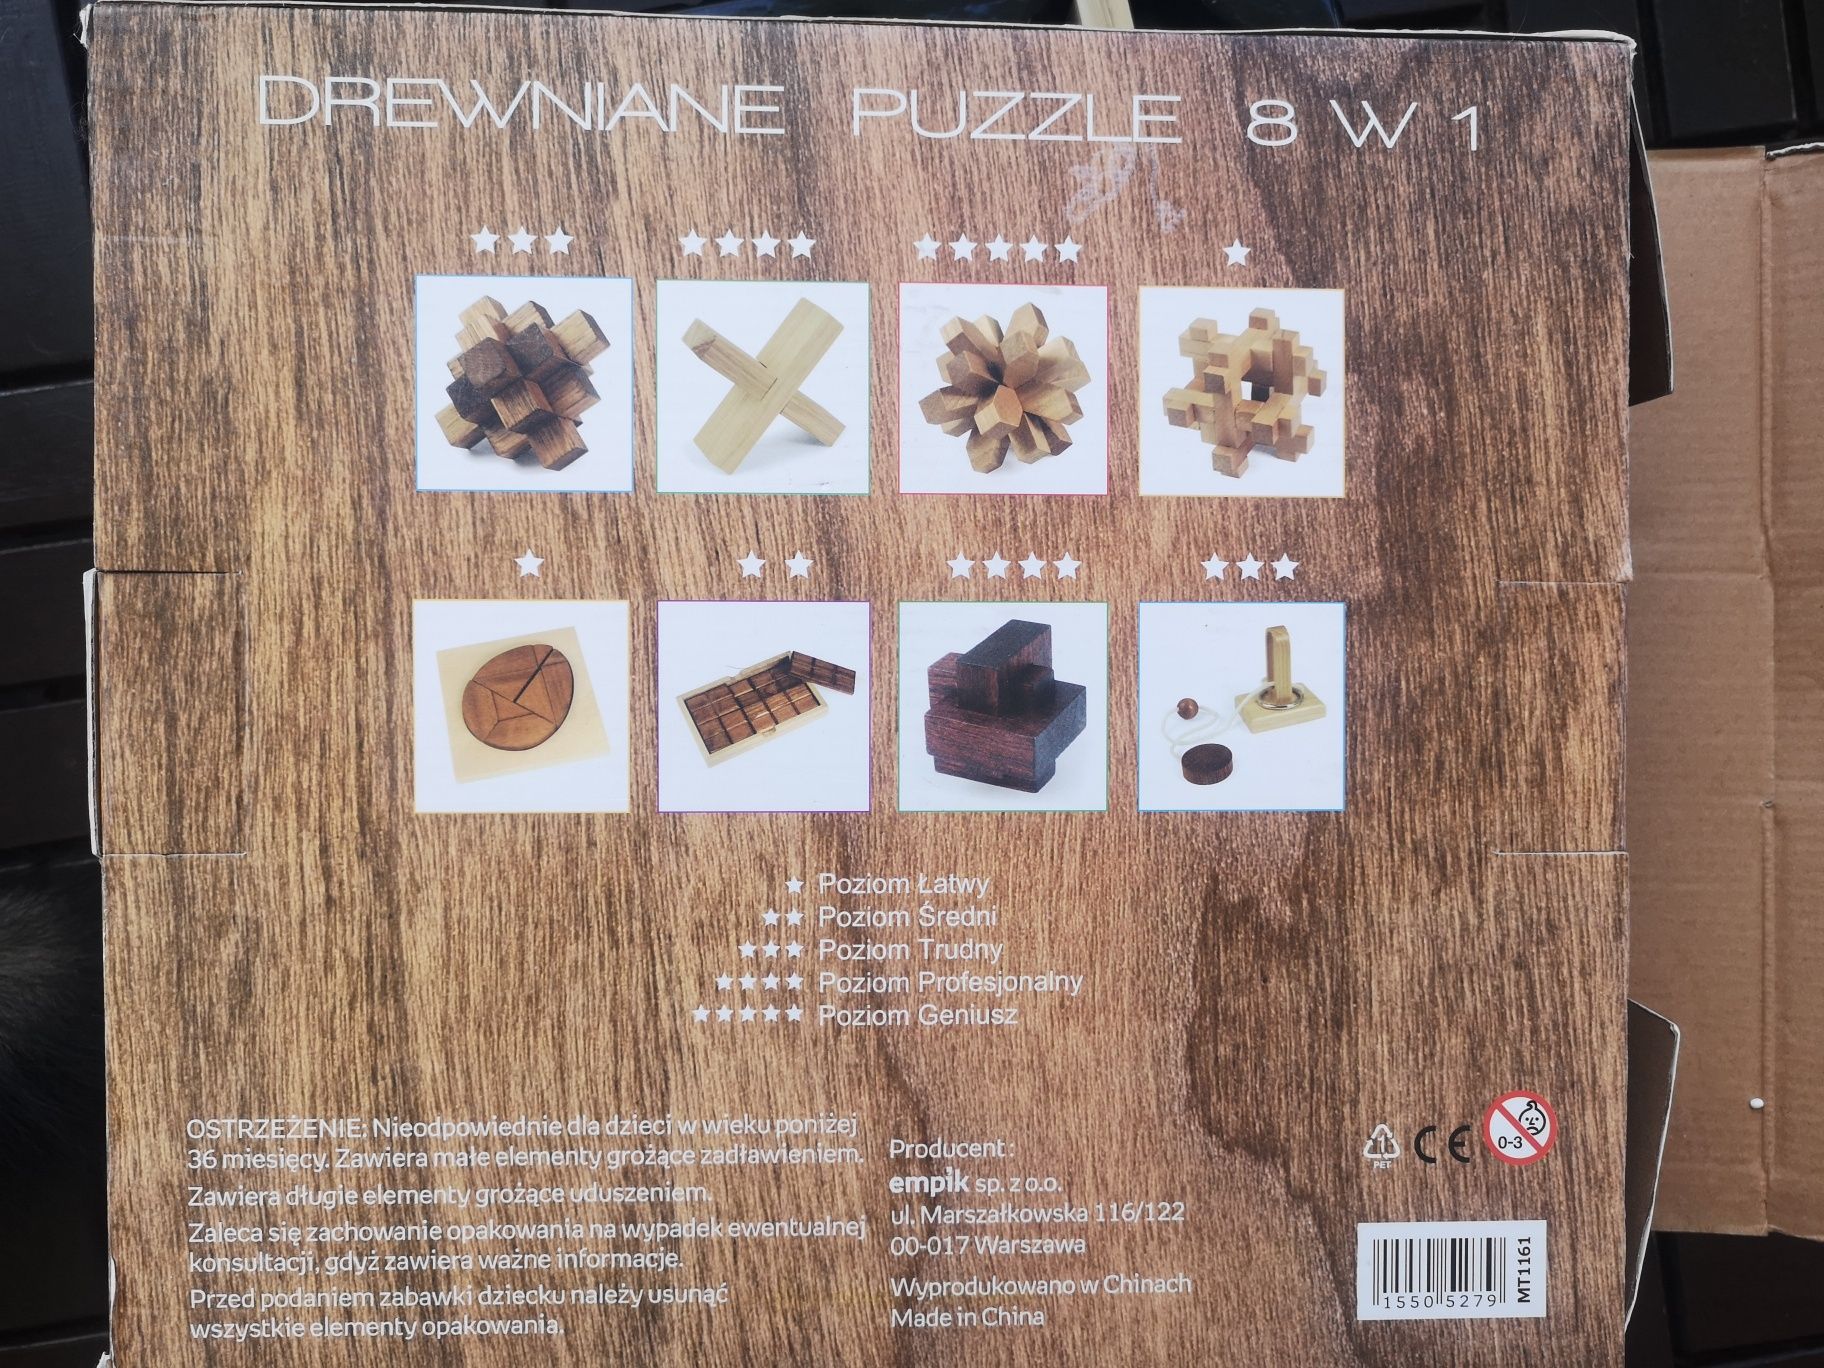 Drewniane puzzle 8 w 1 (empik)